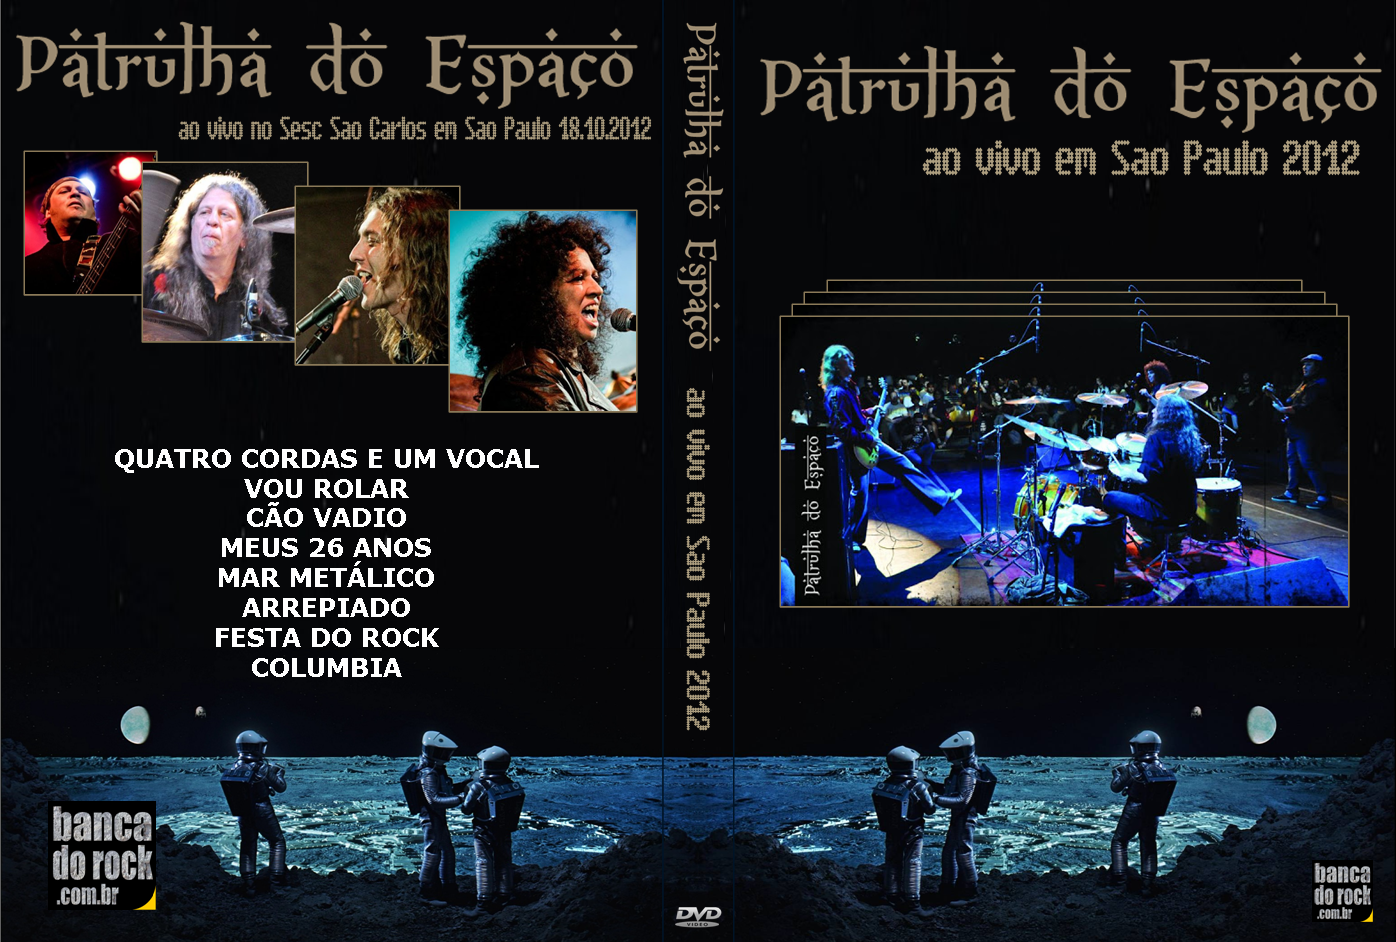 BANCA DO ROCK Rock Concert DVD: 2687 - DVD - PATRULHA DO ESPAÇO 2012